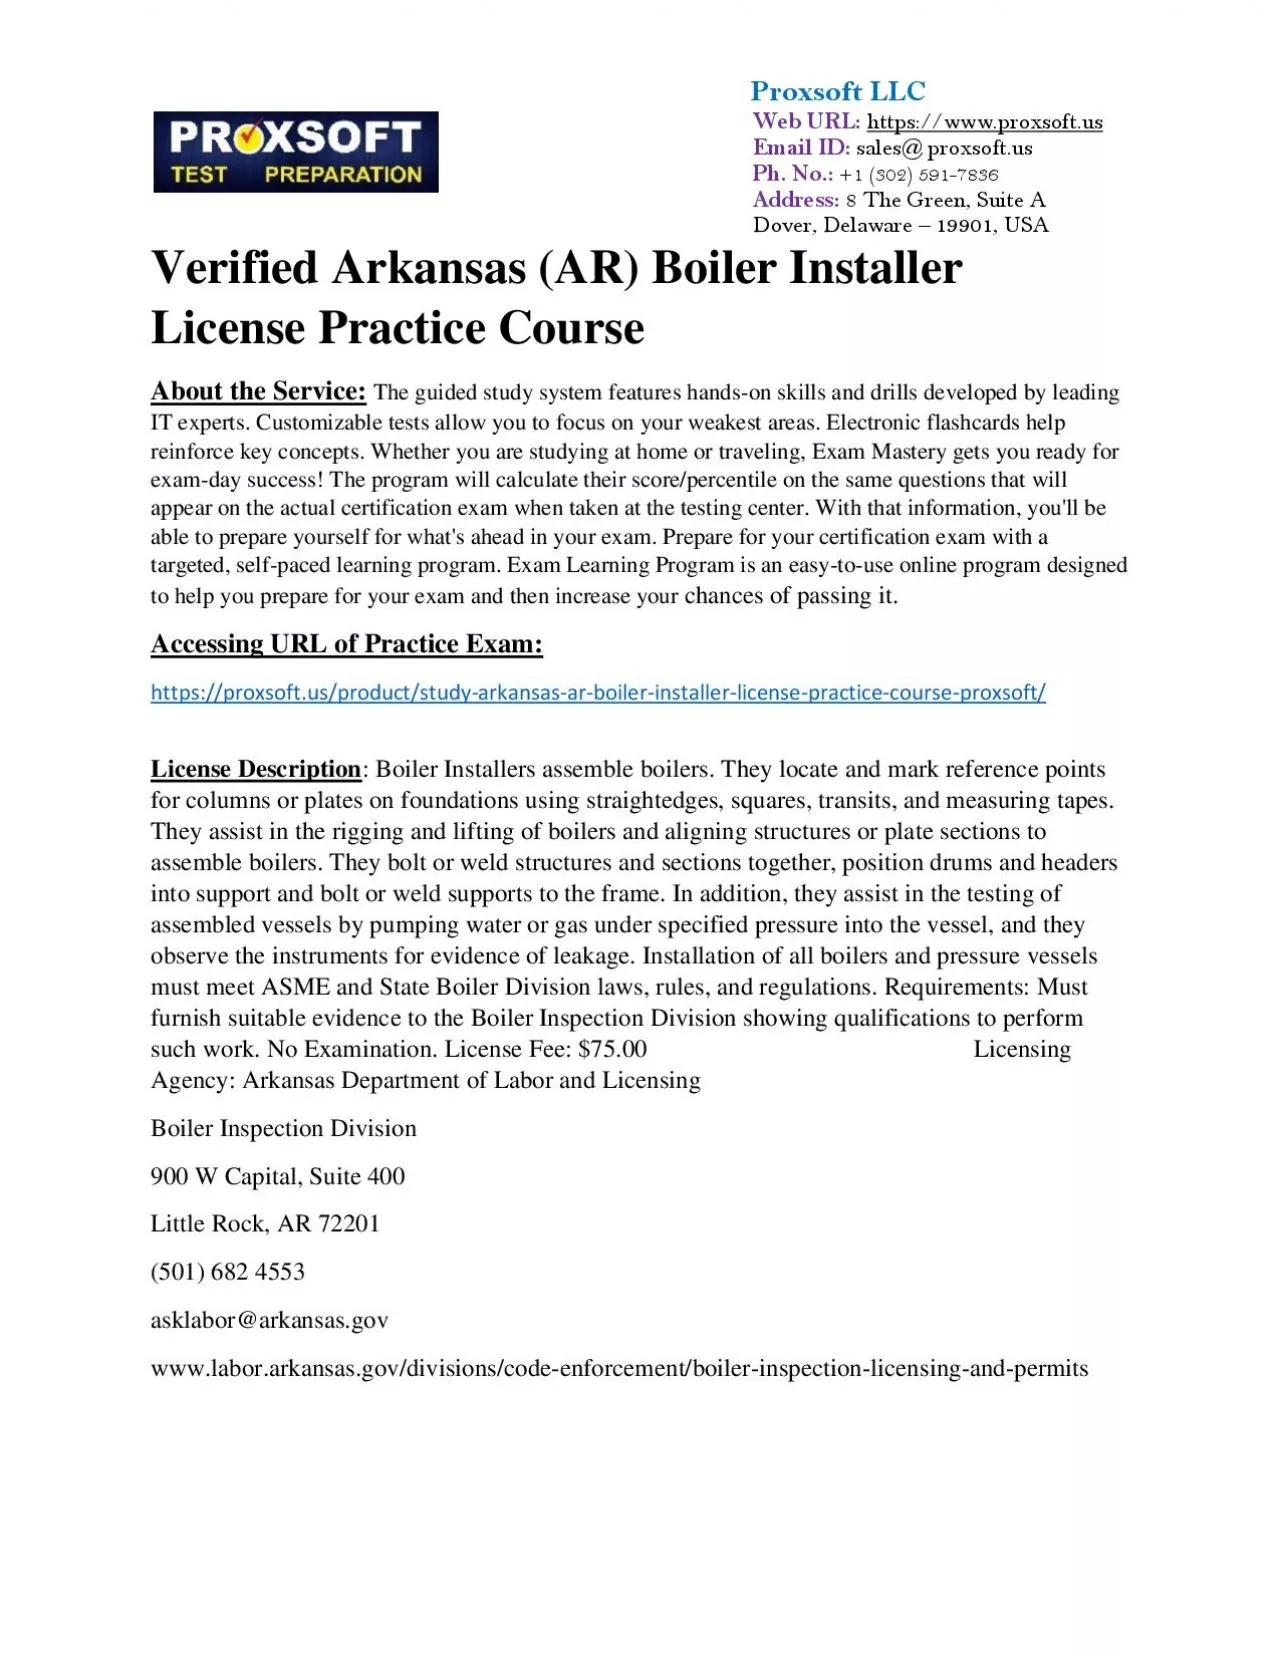 Verified Arkansas (AR) Boiler Installer License Practice Course